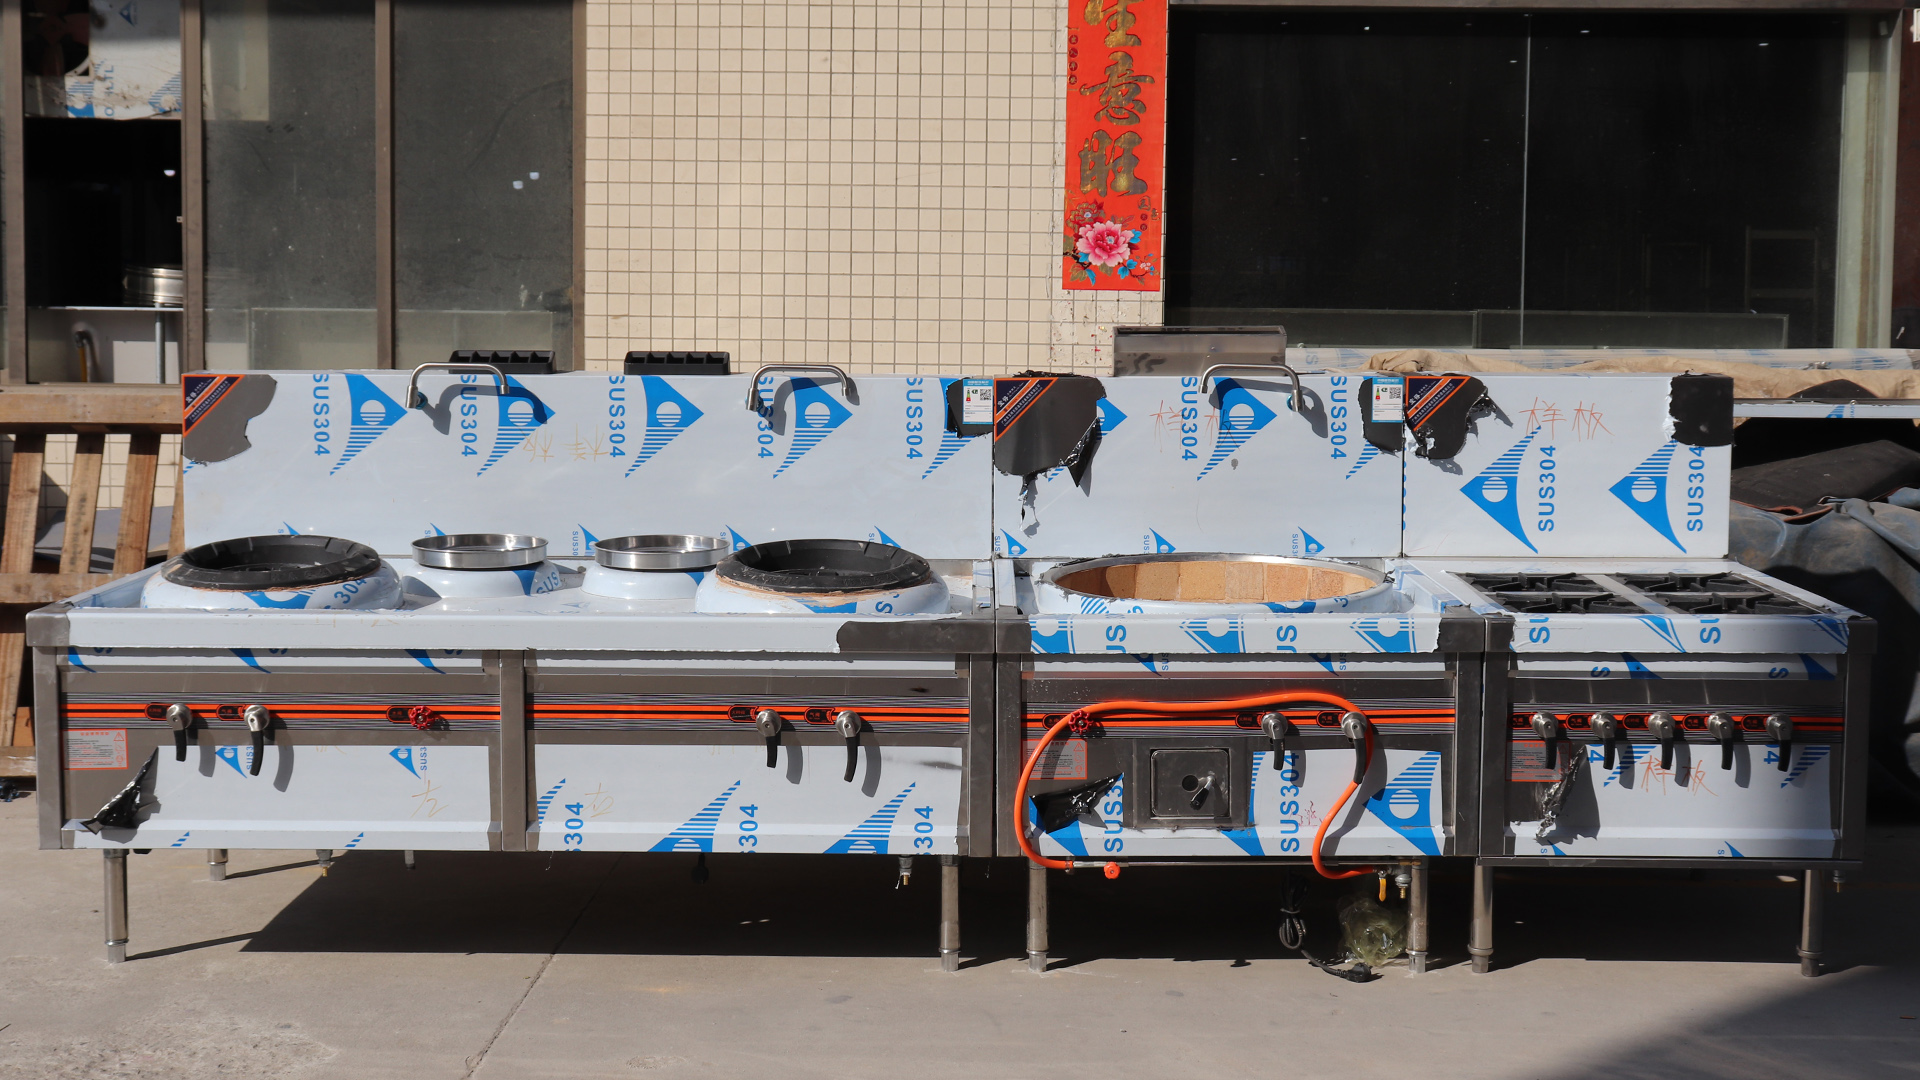 مجموعة طهي عالية الجودة من الفولاذ المقاوم للصدأ مع موقد واحد / موقد غاز للطهي الصيني لمطعم بالجملة- Guangzhou Benchu ​​Kitchen Equipment Co.، Ltd.